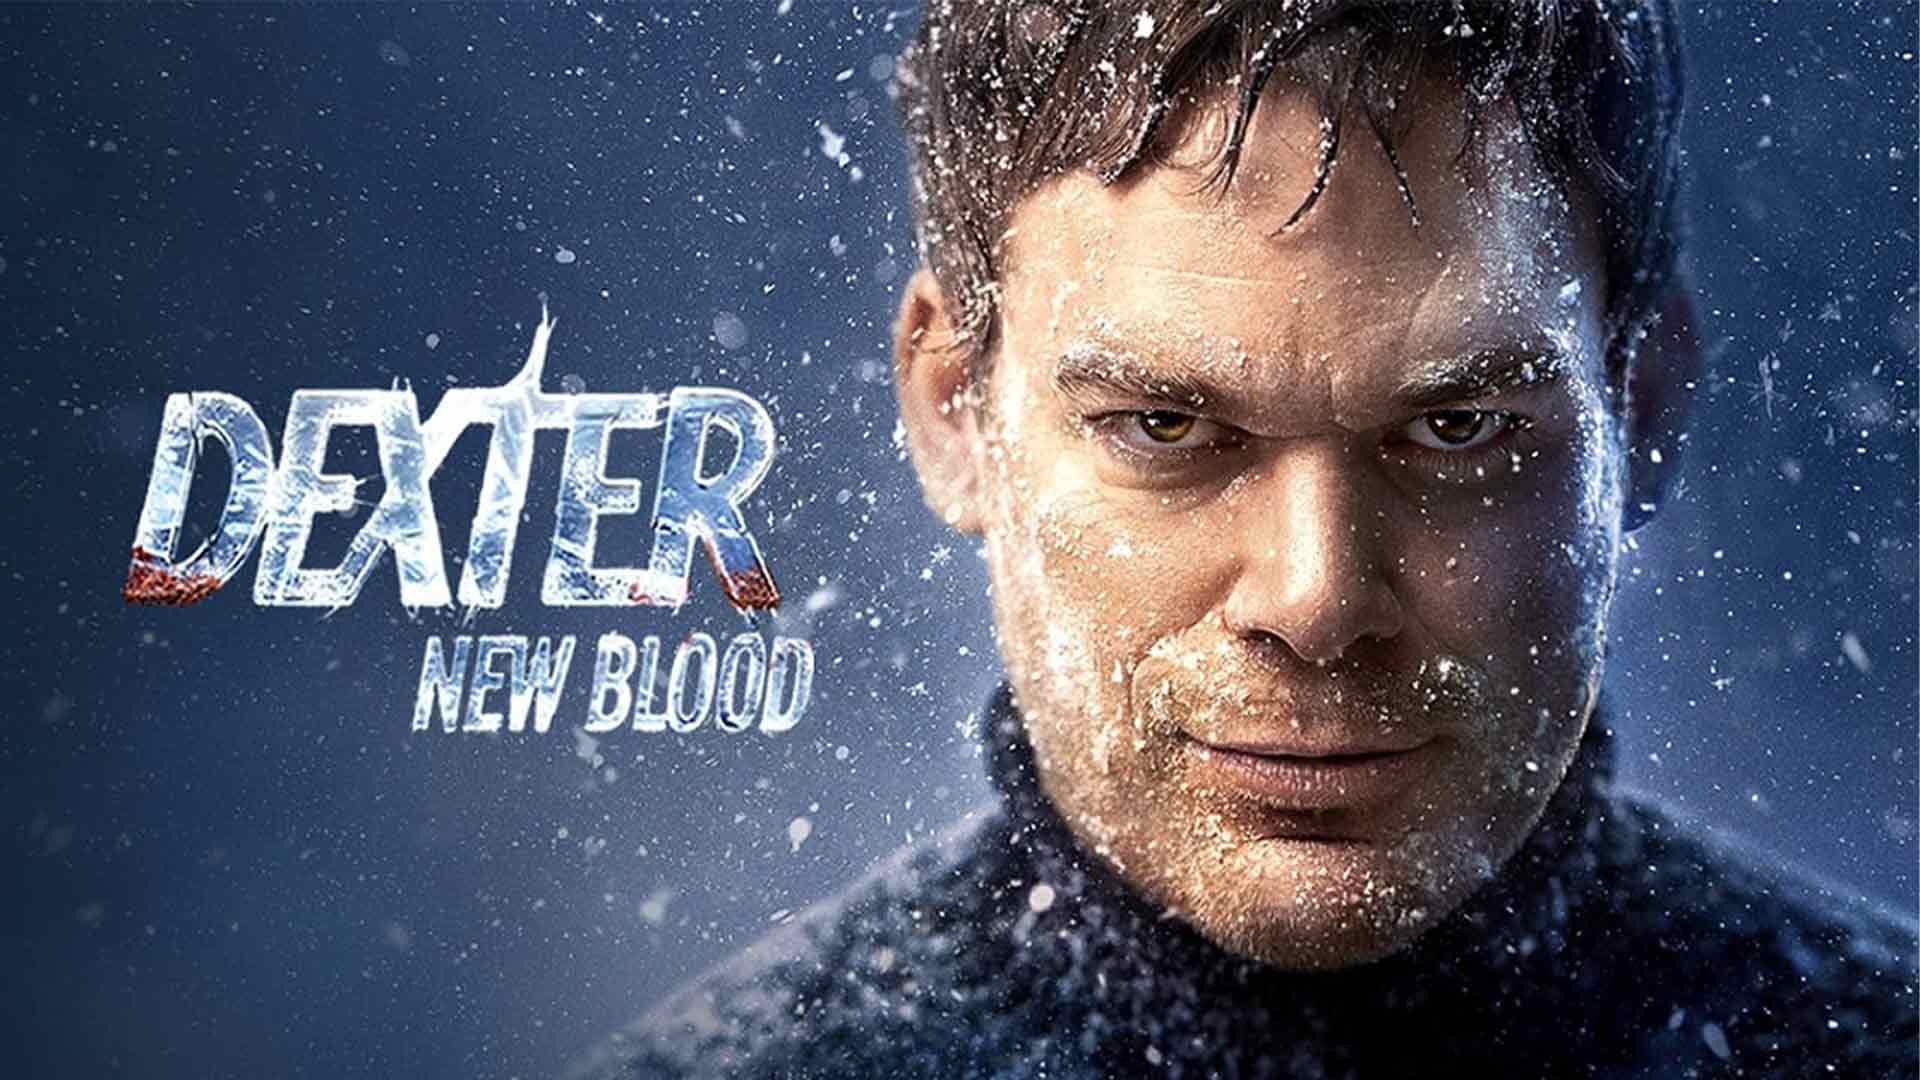 سریال Dexter: New Blood